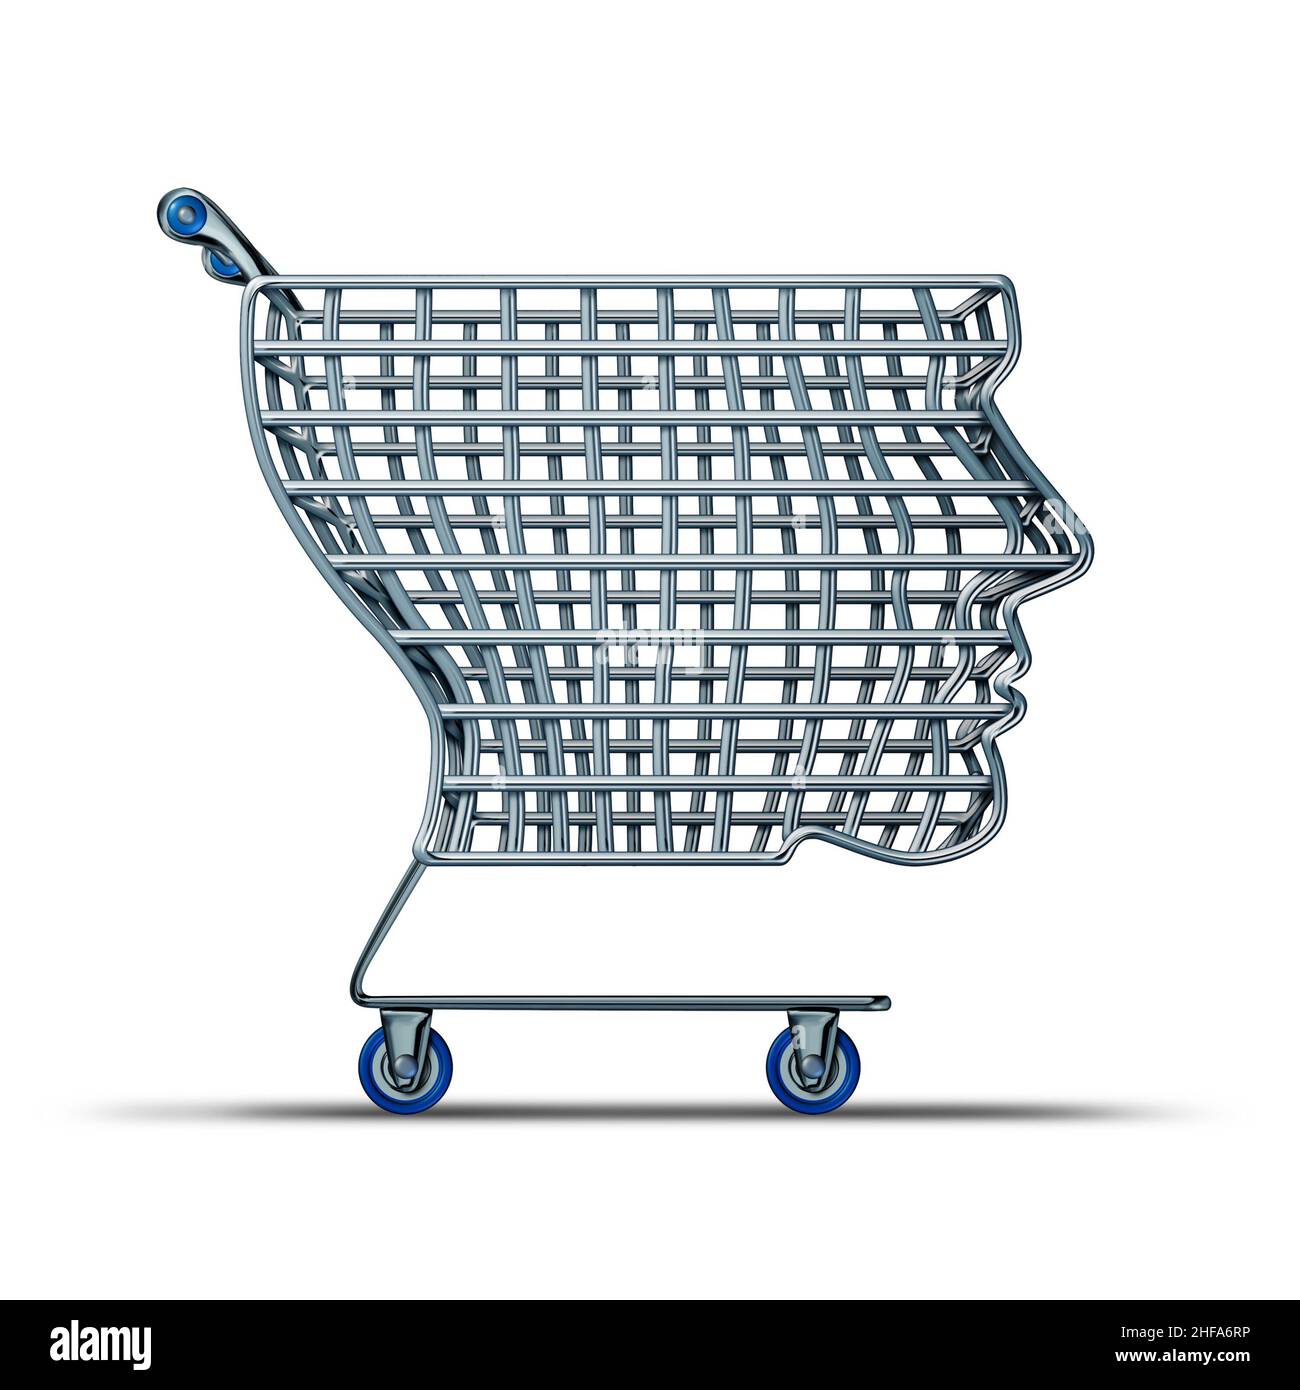 Shopping intelligente e Intelligent Shopper come concetto di acquisto di clienti o consumatori per spendere denaro come illustrazione 3D. Foto Stock